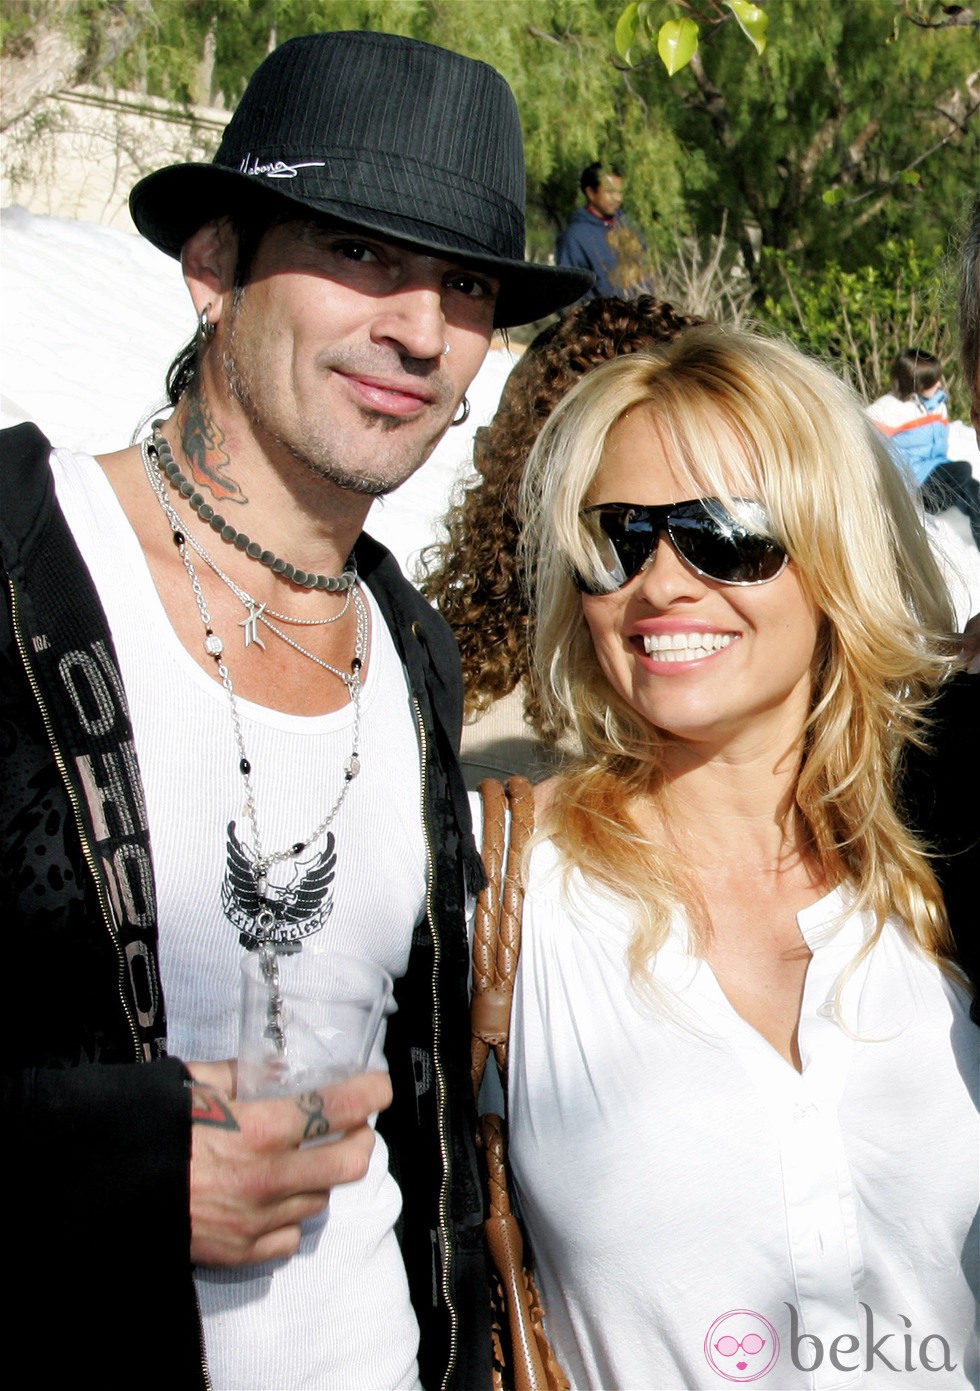 La boda de Pamela Anderson y Tommy Lee duró cuatro meses